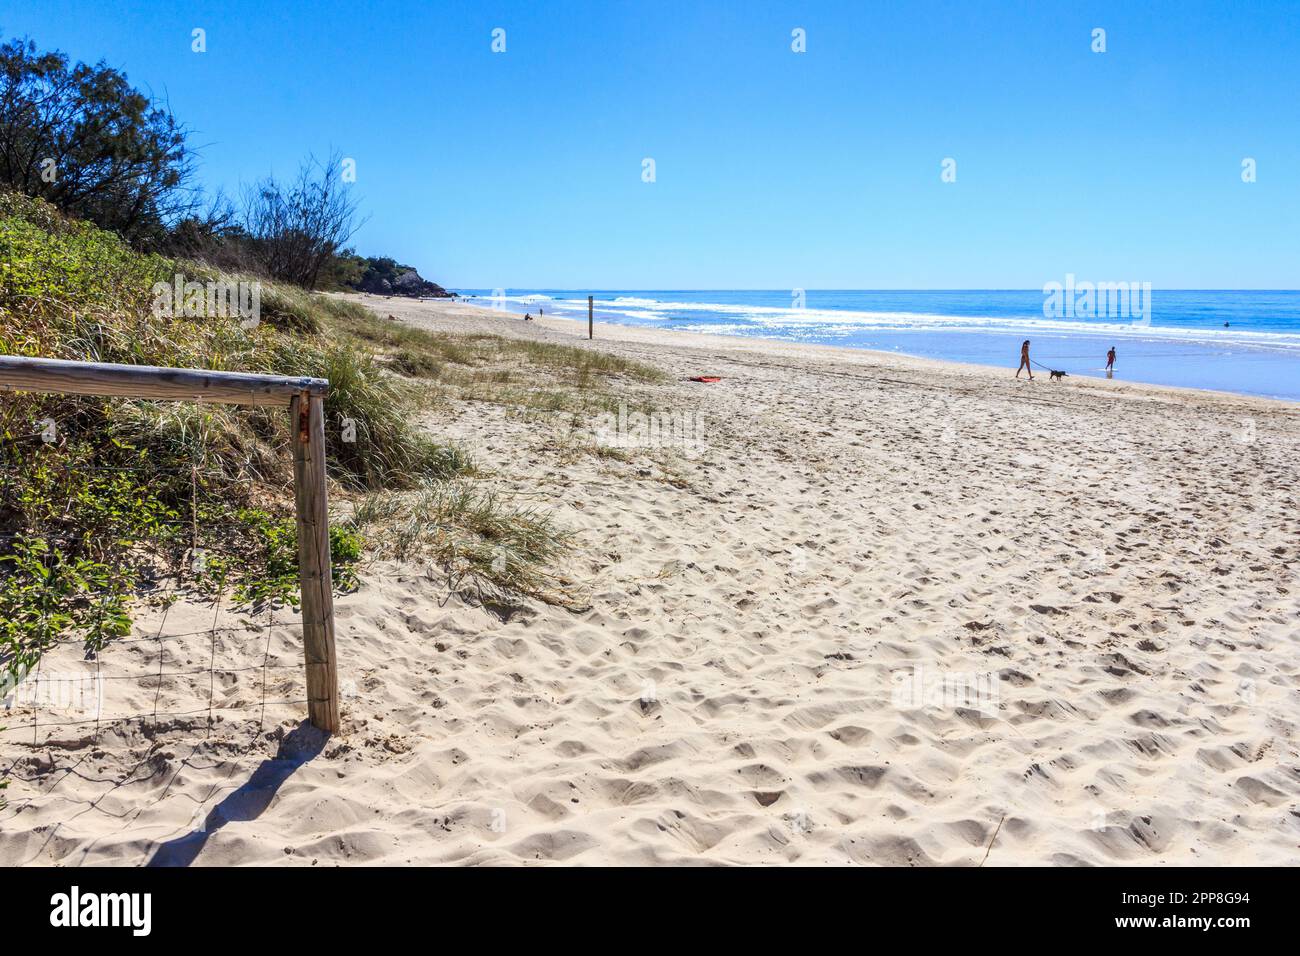 Mermaid beach on a sunny, summer's day,  Burleigh, Gold Coast, Queensland, Australia Stock Photo